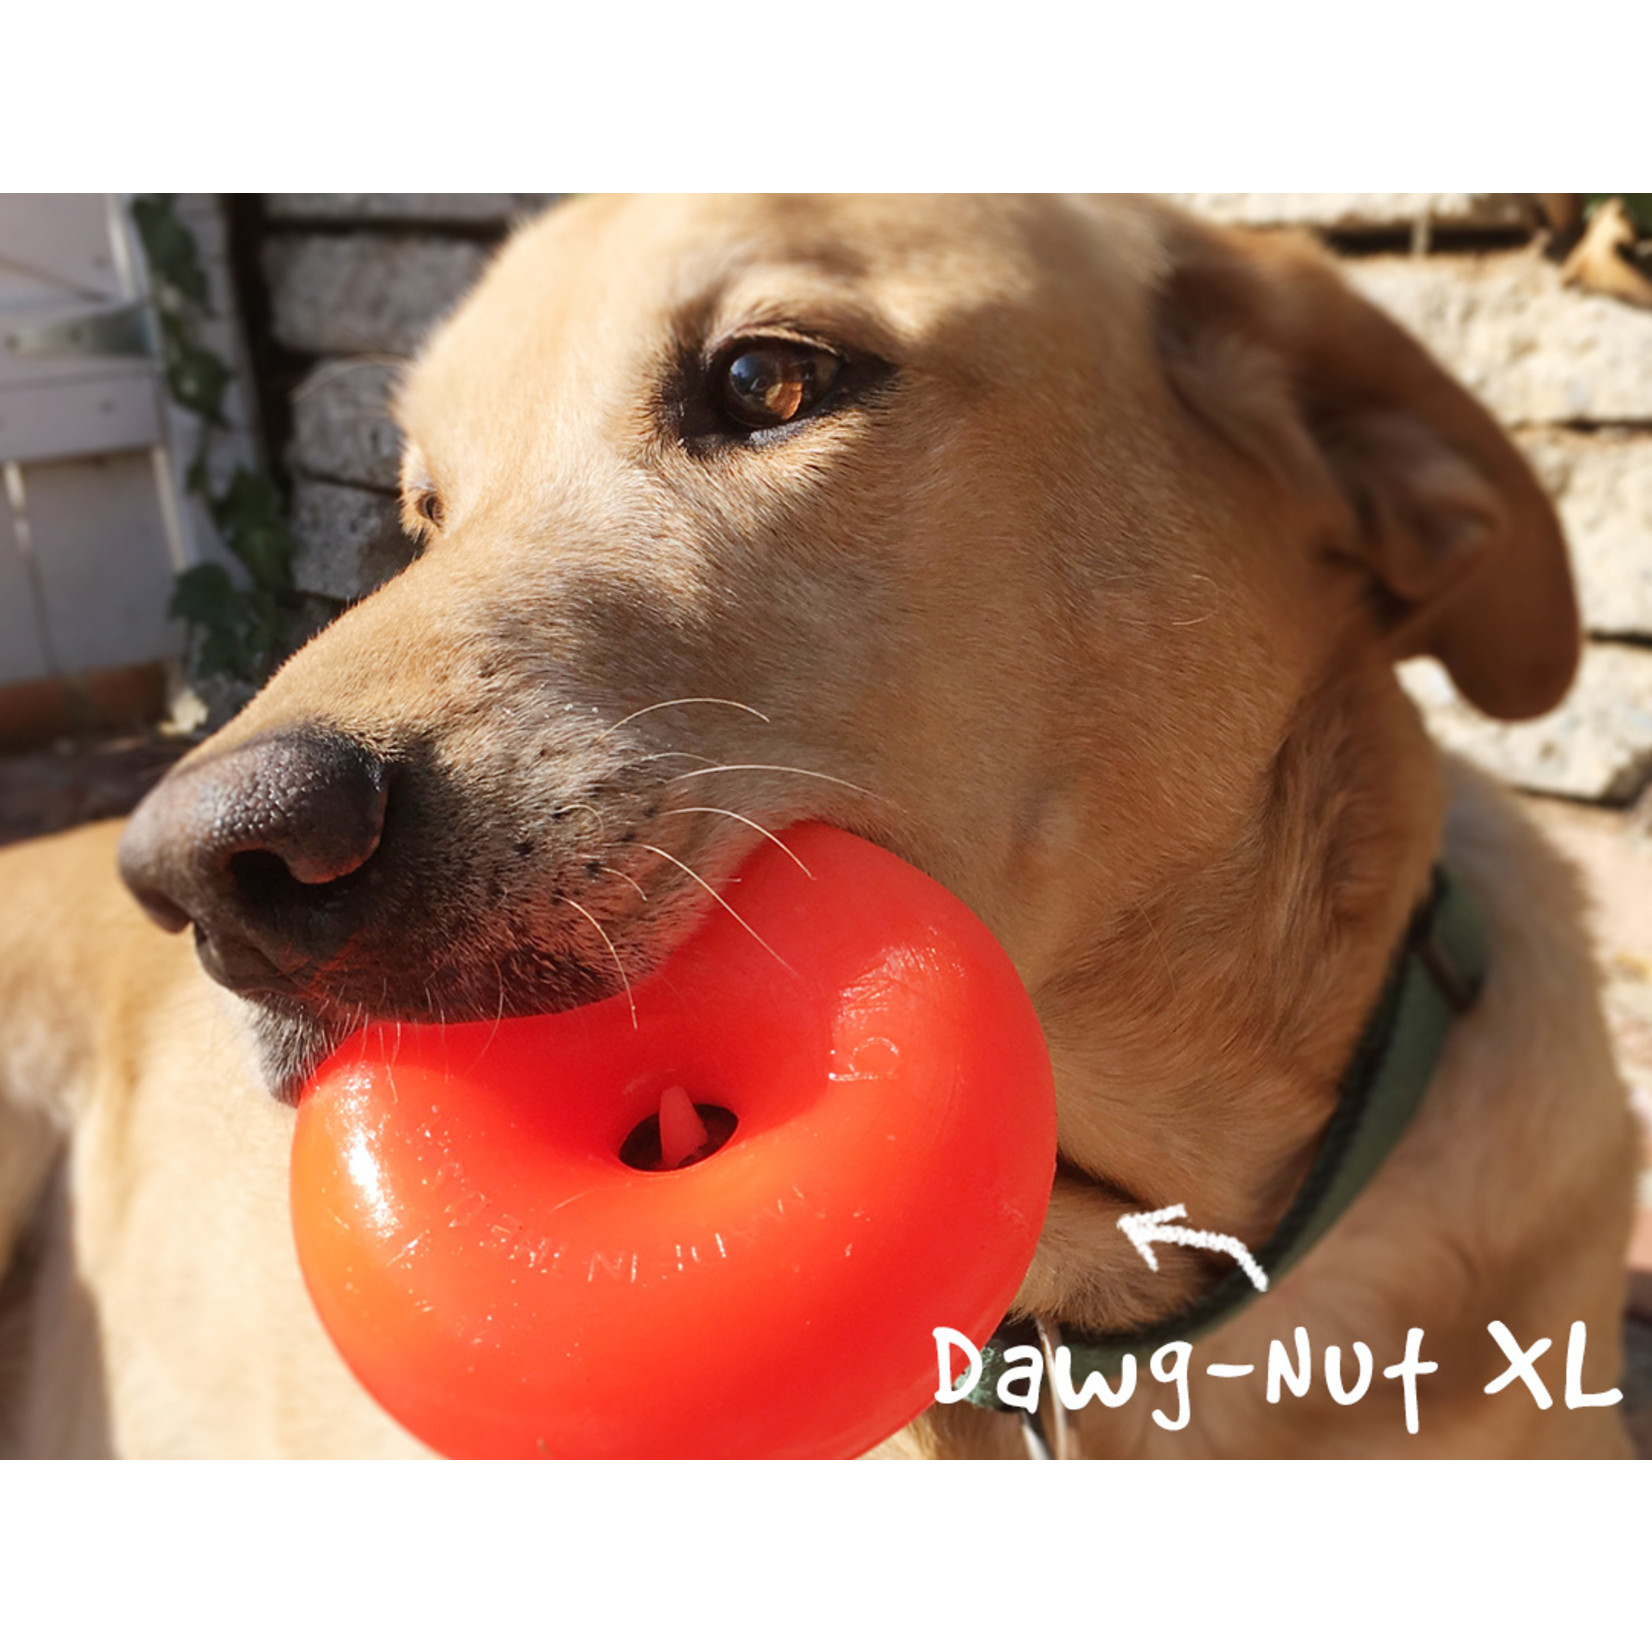 Ruff Dawg Ruff Dawg Dawg Nut XL Indestructable Rubber Donut Dog Toy